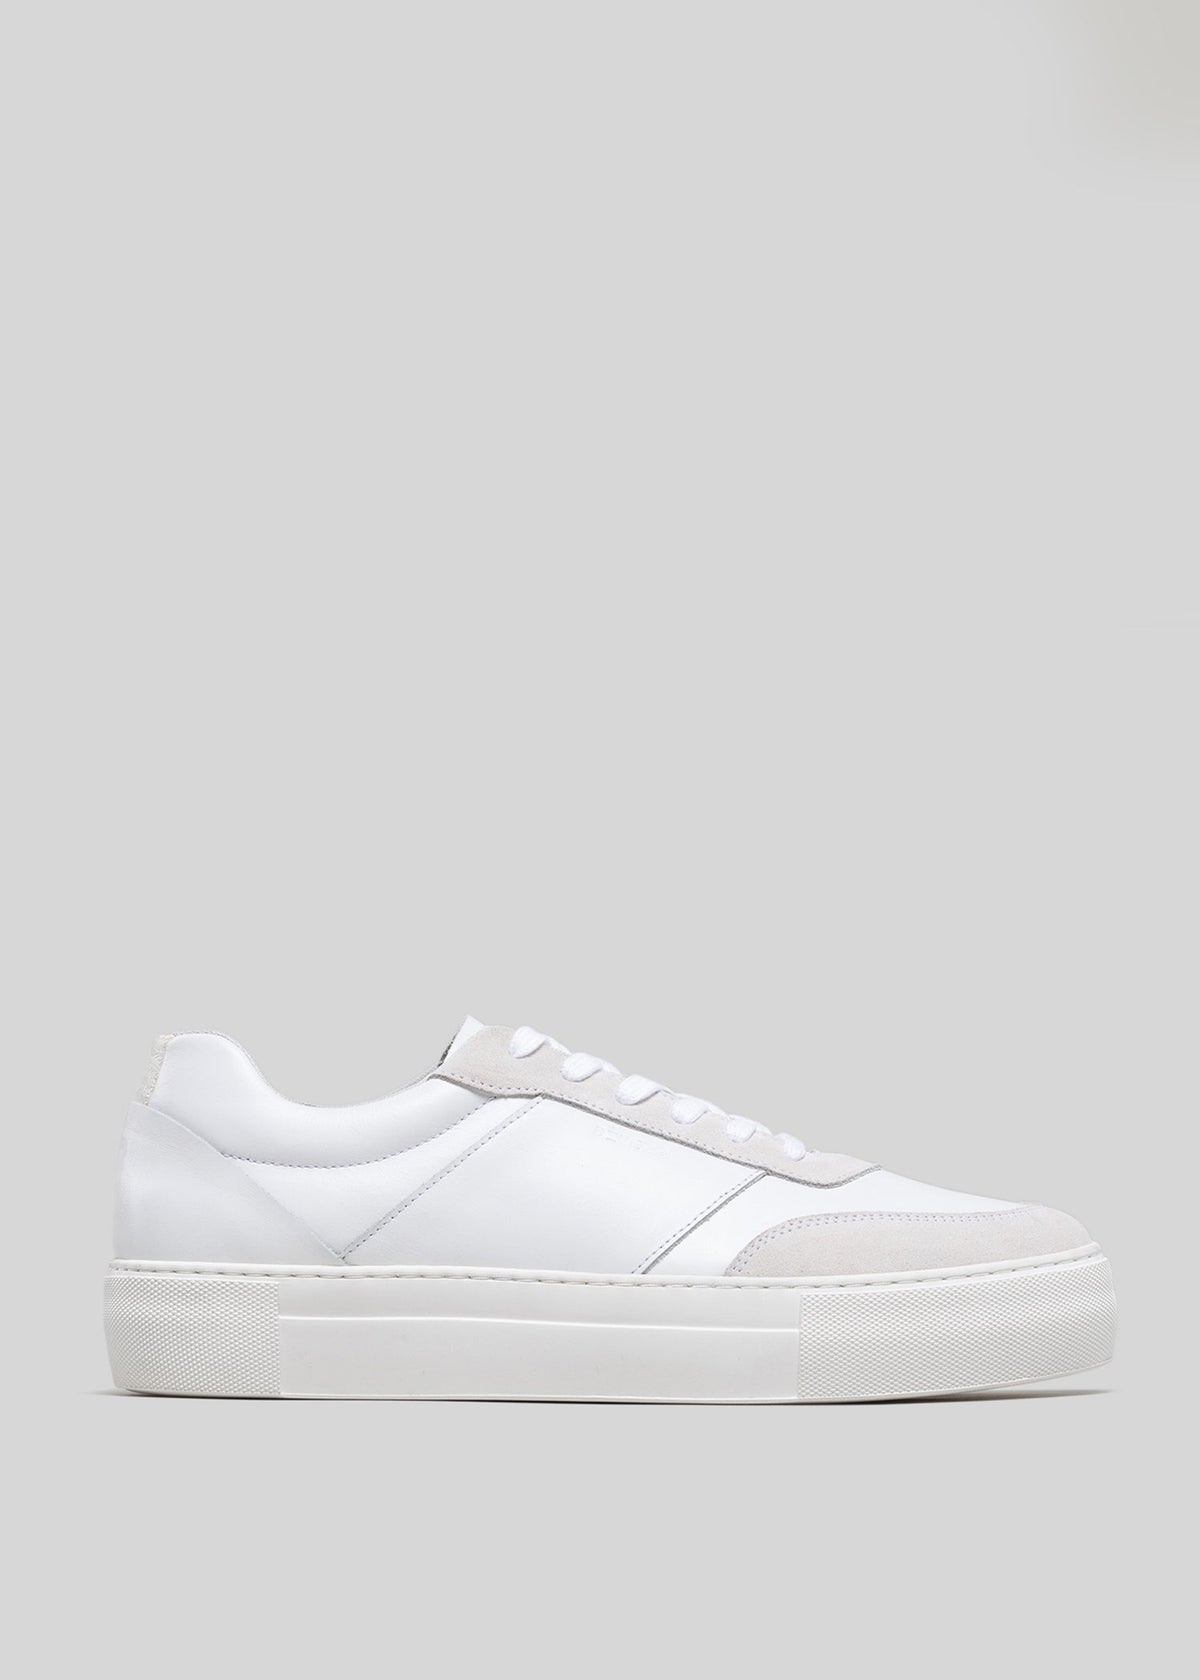 Vista laterale di una sneaker bassa Now White Canvas con suola spessa, visualizzata su uno sfondo grigio chiaro.